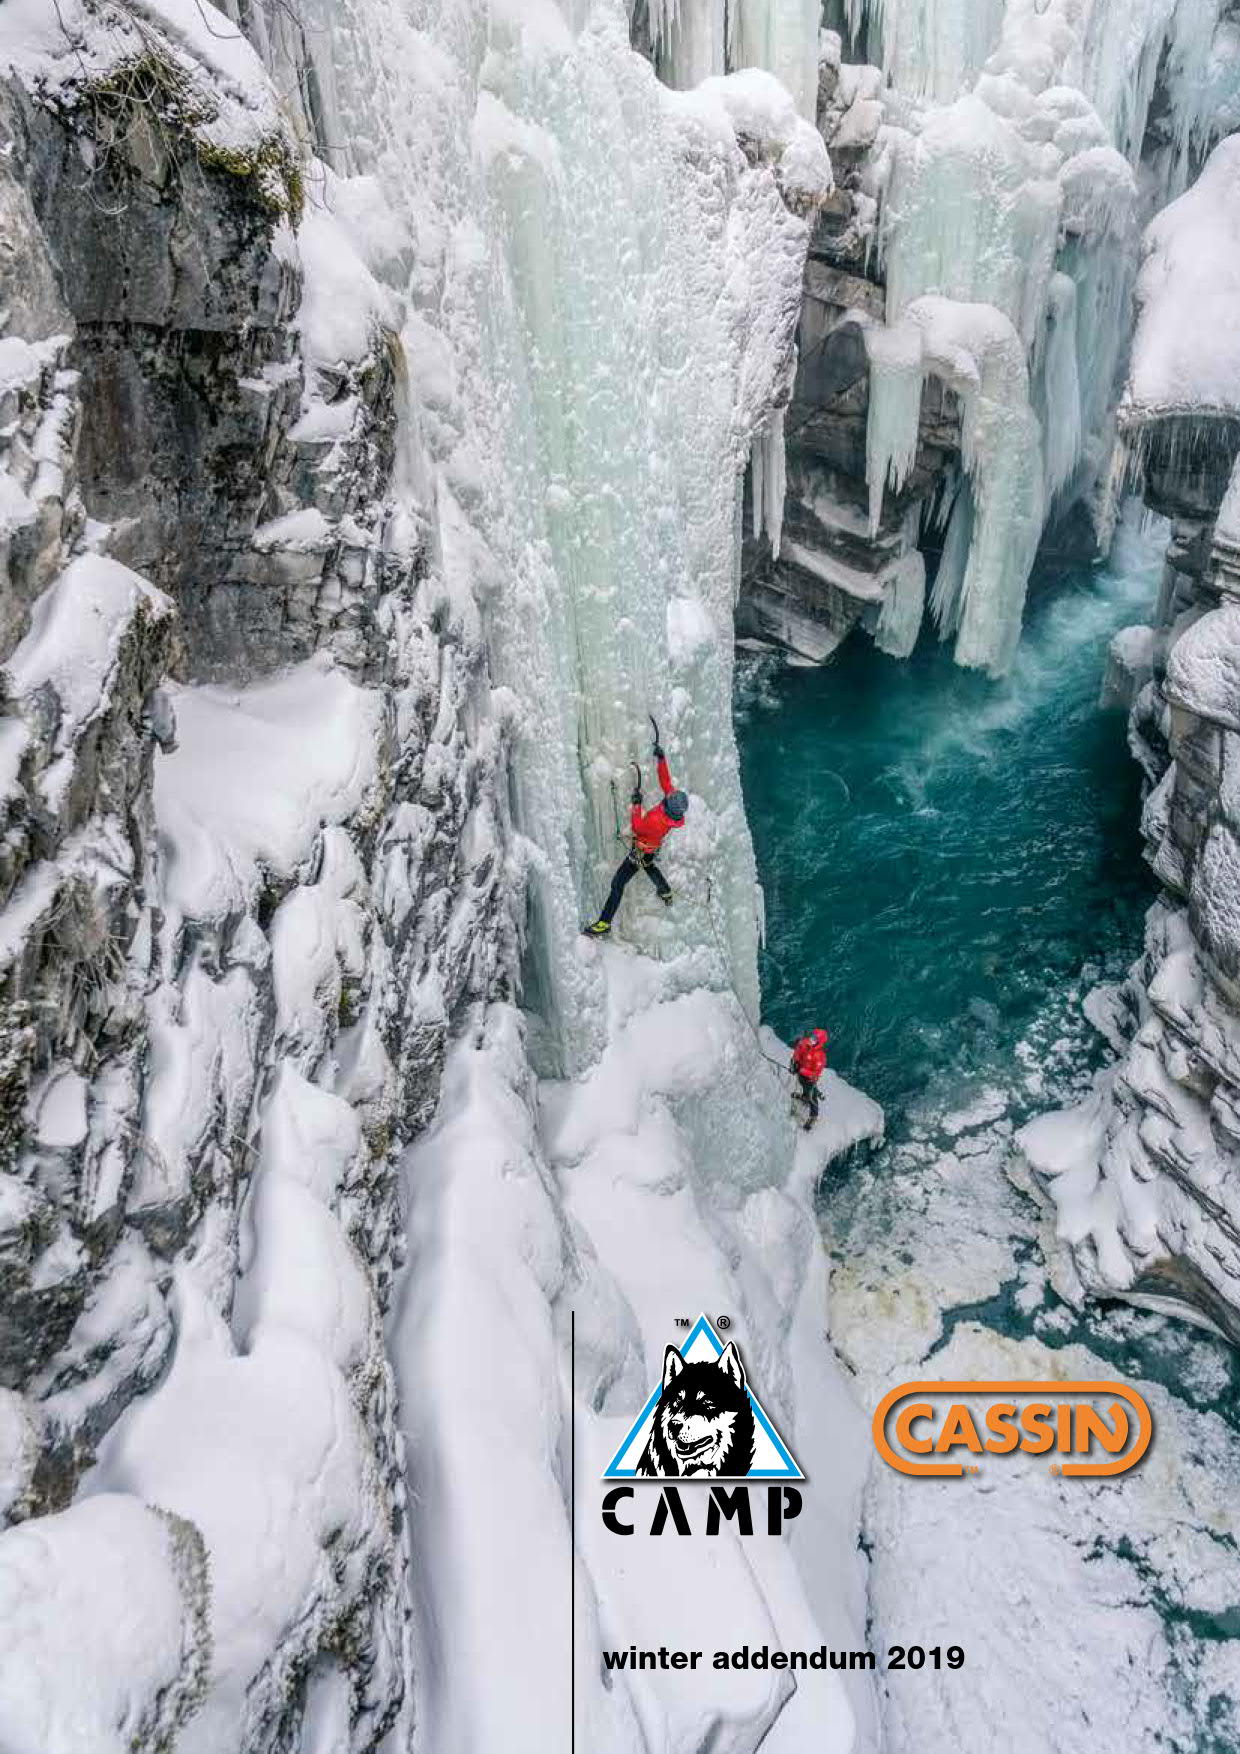 Vedi il catalogo Camp - Cassin Inverno 2019